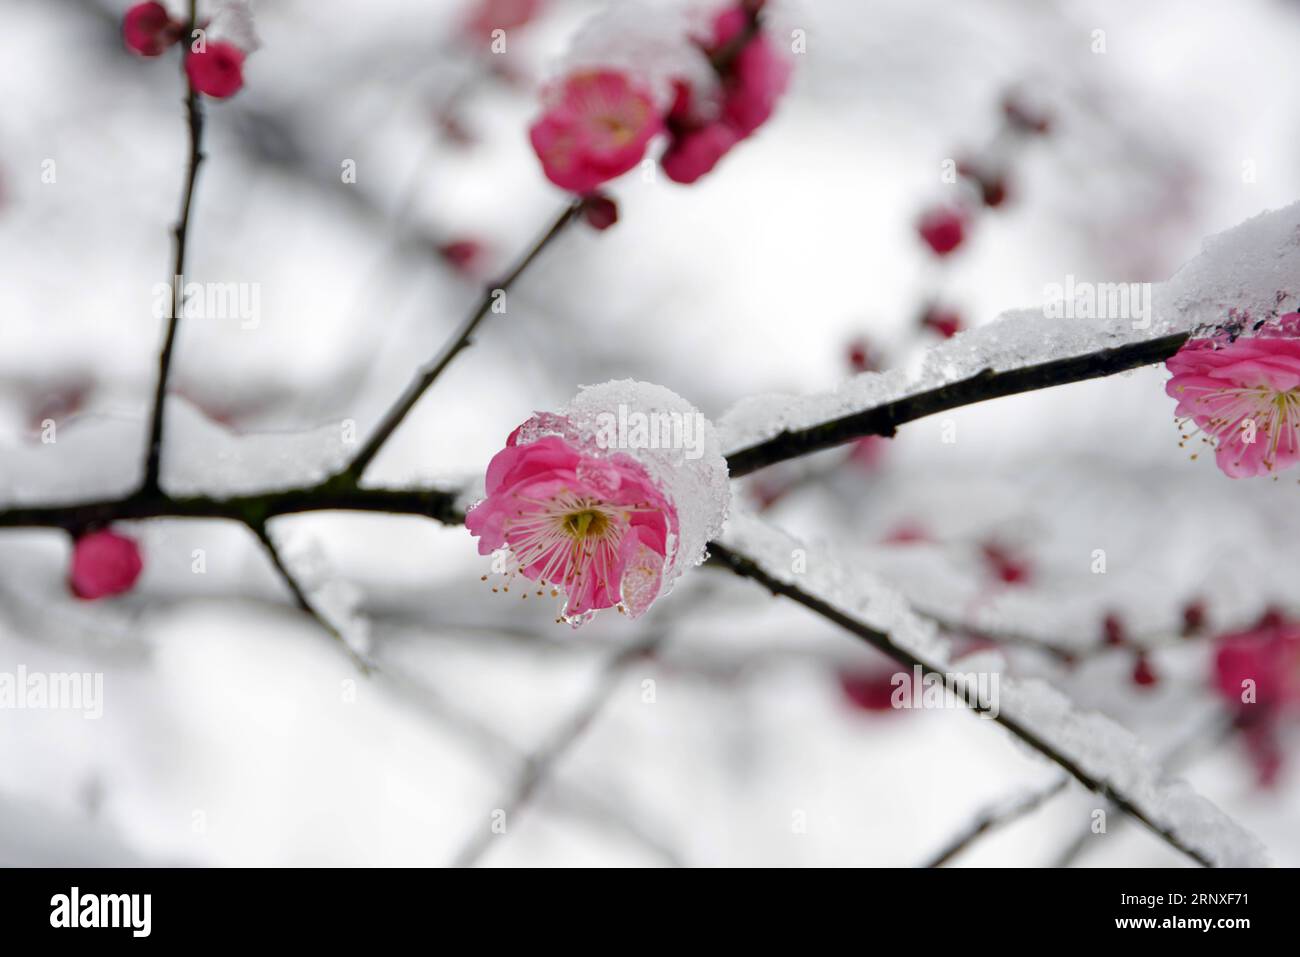 (180127) -- HANGZHOU, Jan. 27, 2018 -- Photo taken on Jan. 26, 2018 shows snow-covered red plum blossoms in Tonglu County of Hangzhou City, capital of east China s Zhejiang Province. ) (wf) CHINA-HANGZHOU-RED PLUM (CN) XuxJunyong PUBLICATIONxNOTxINxCHN Stock Photo